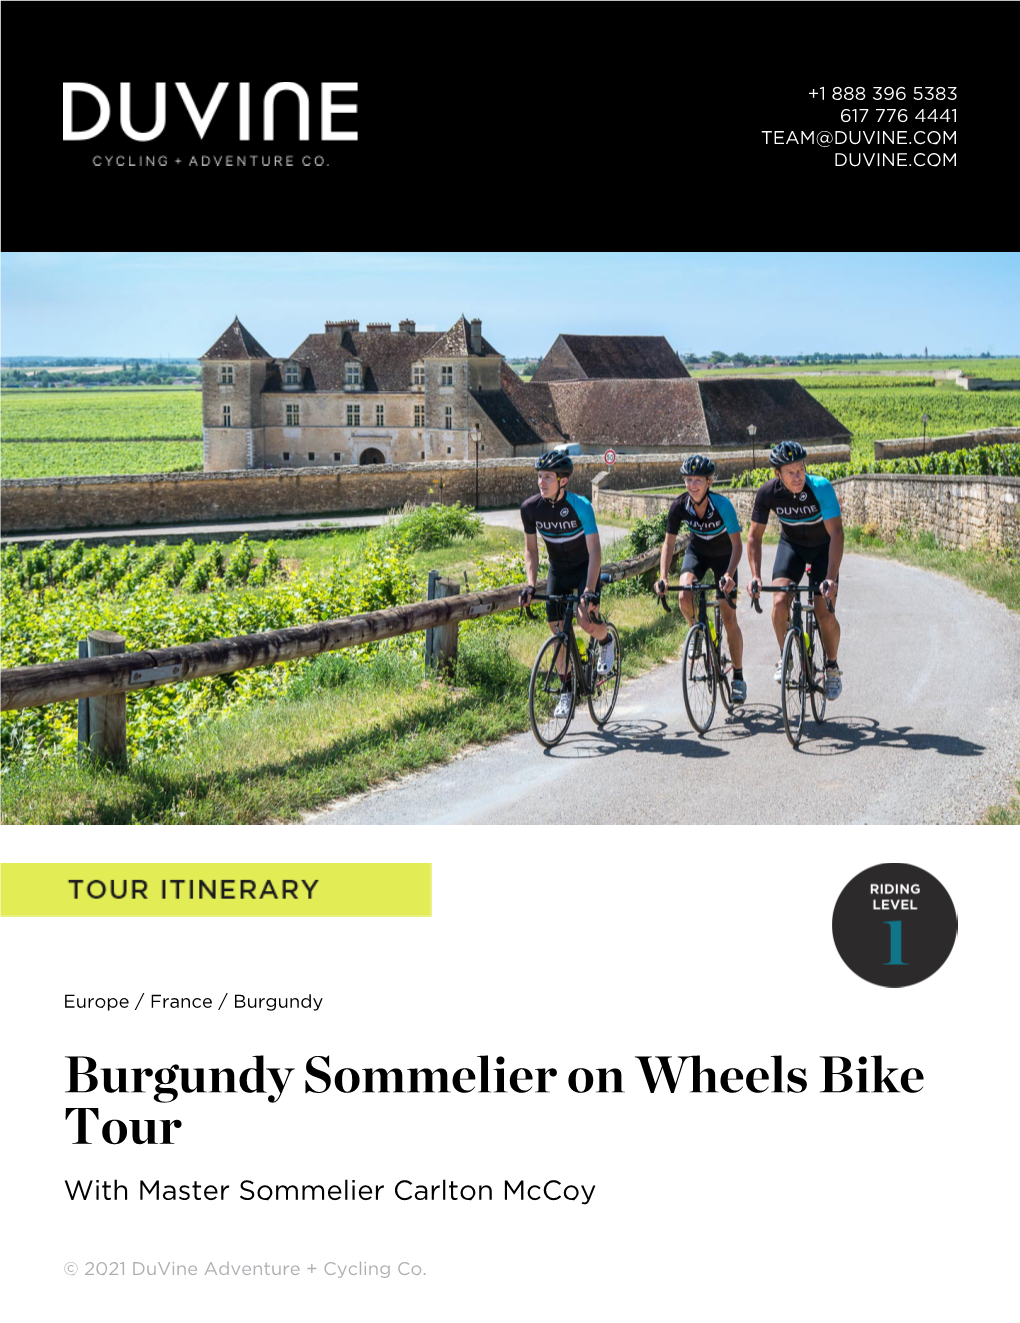 Burgundy Sommelier on Wheels Bike Tour with Master Sommelier Carlton Mccoy